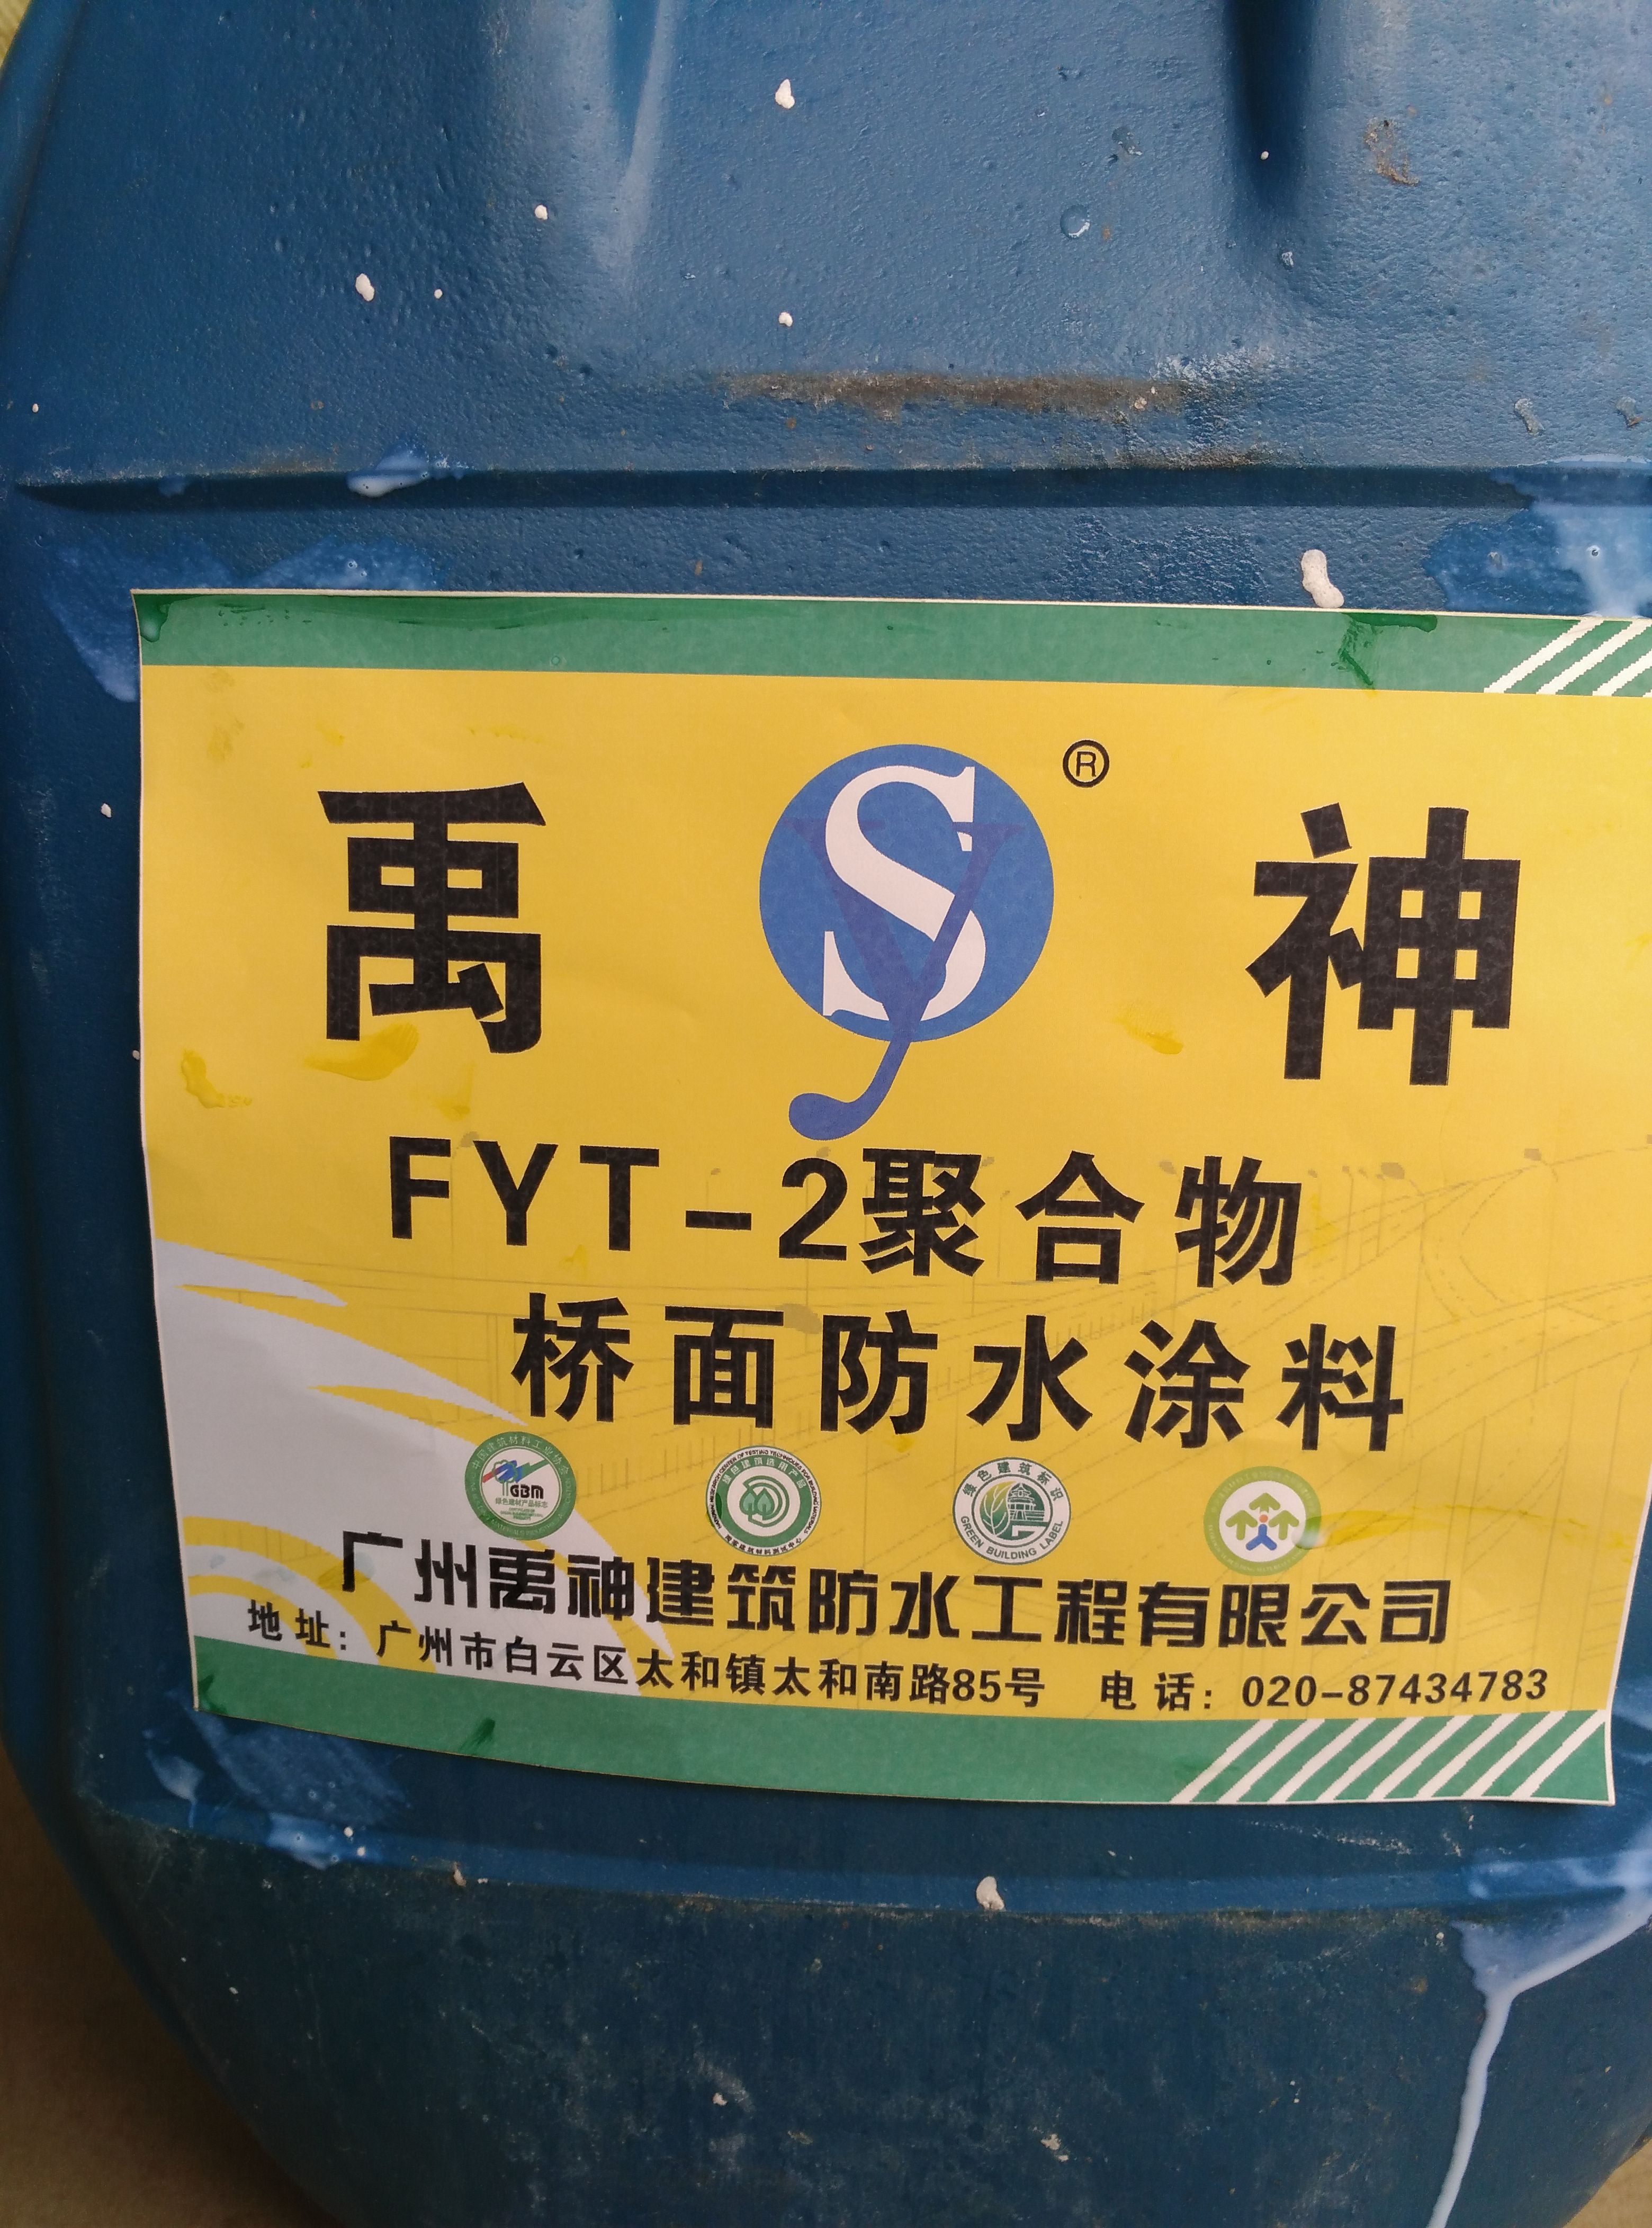 广州FYT—2 FYT—2道桥防水涂料批发价格